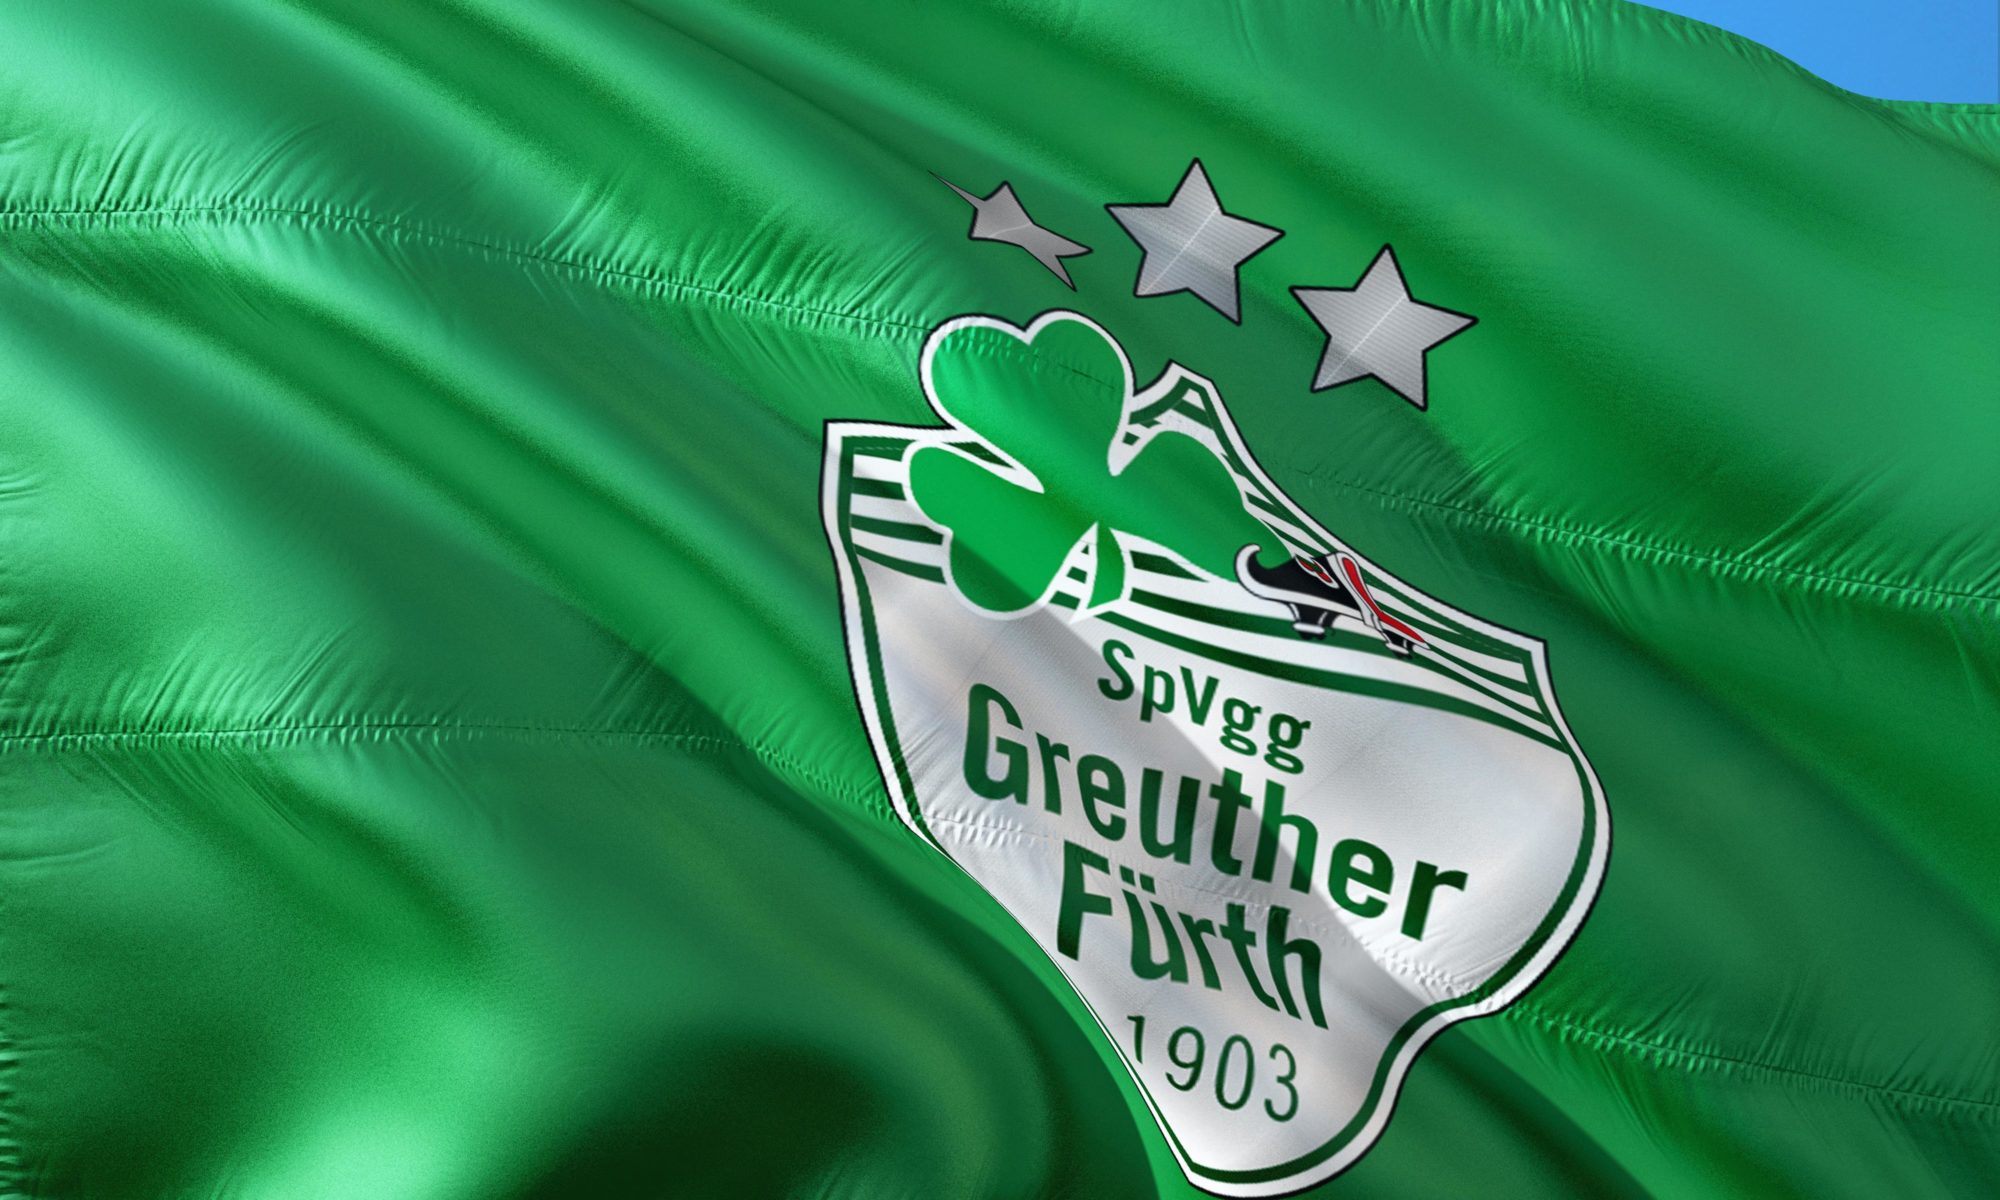 Das Logo der Spielvereinigung Greuther Fürth. Quelle: Pixabay (Jorono(/SpVgg Greuther Fürth